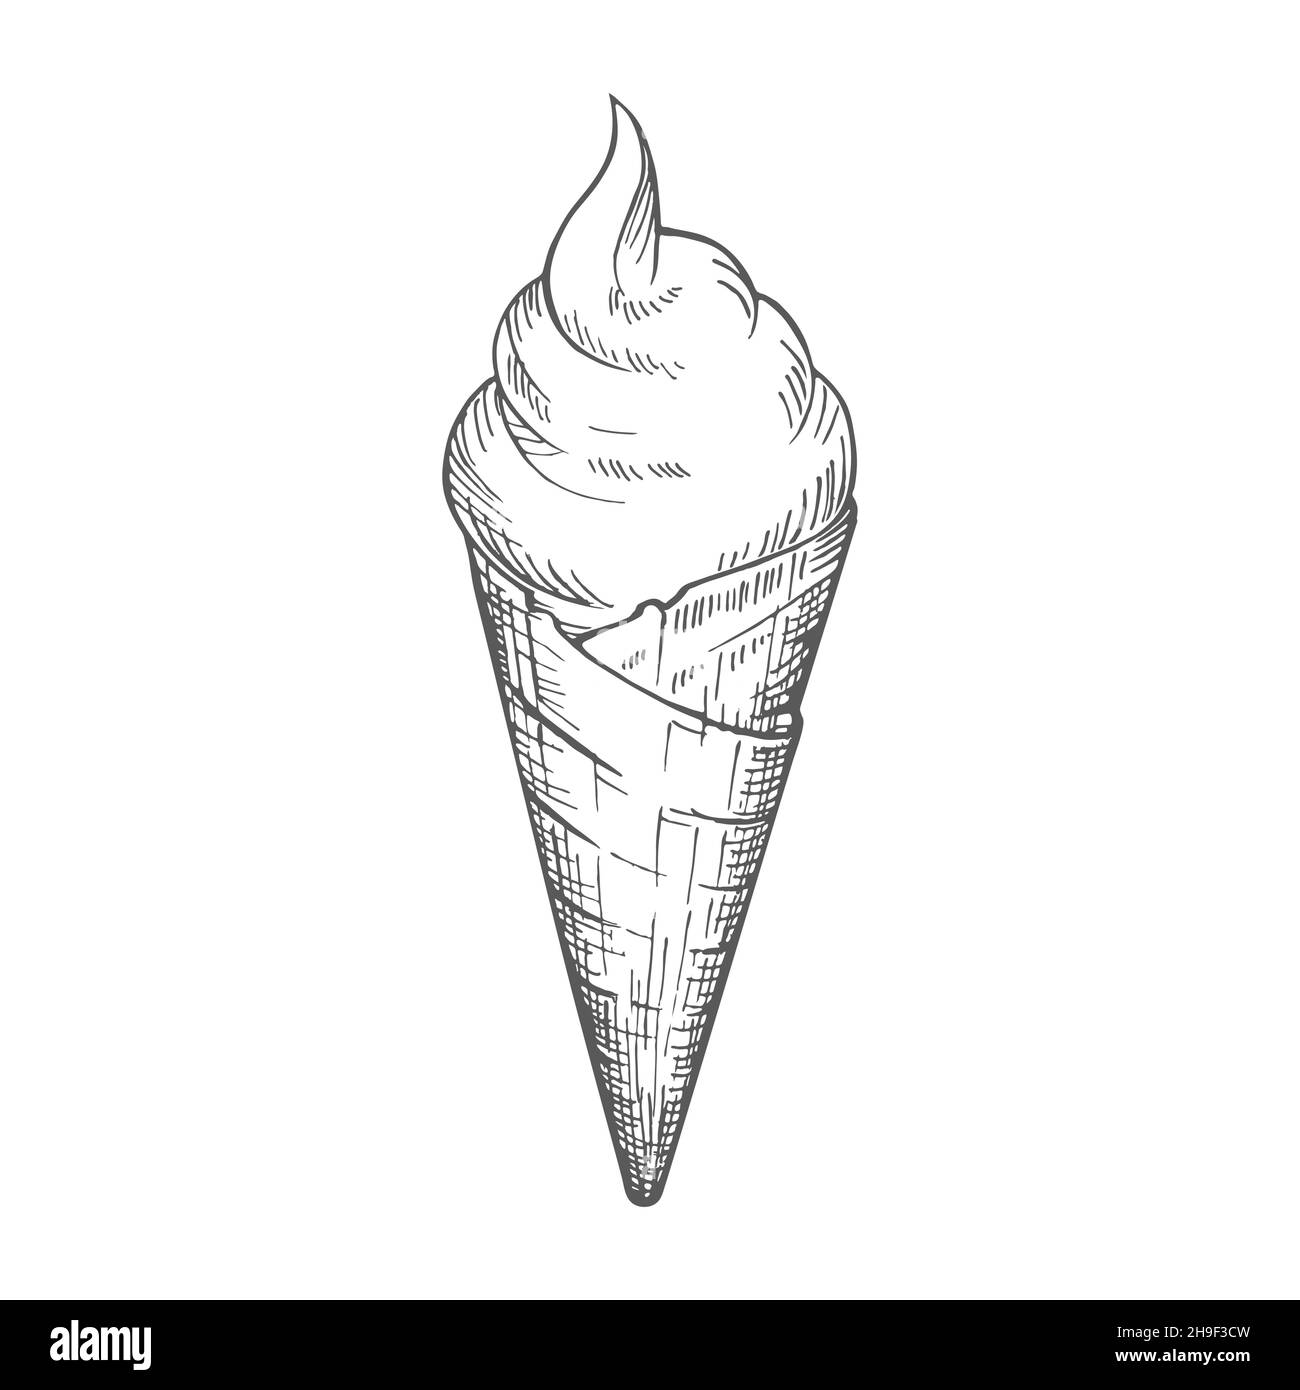 Gelato con cono waffle. Illustrazione vettoriale schizzo di disegno a mano swirl gelato in cono cialda isolato su sfondo bianco. Illustrazione Vettoriale